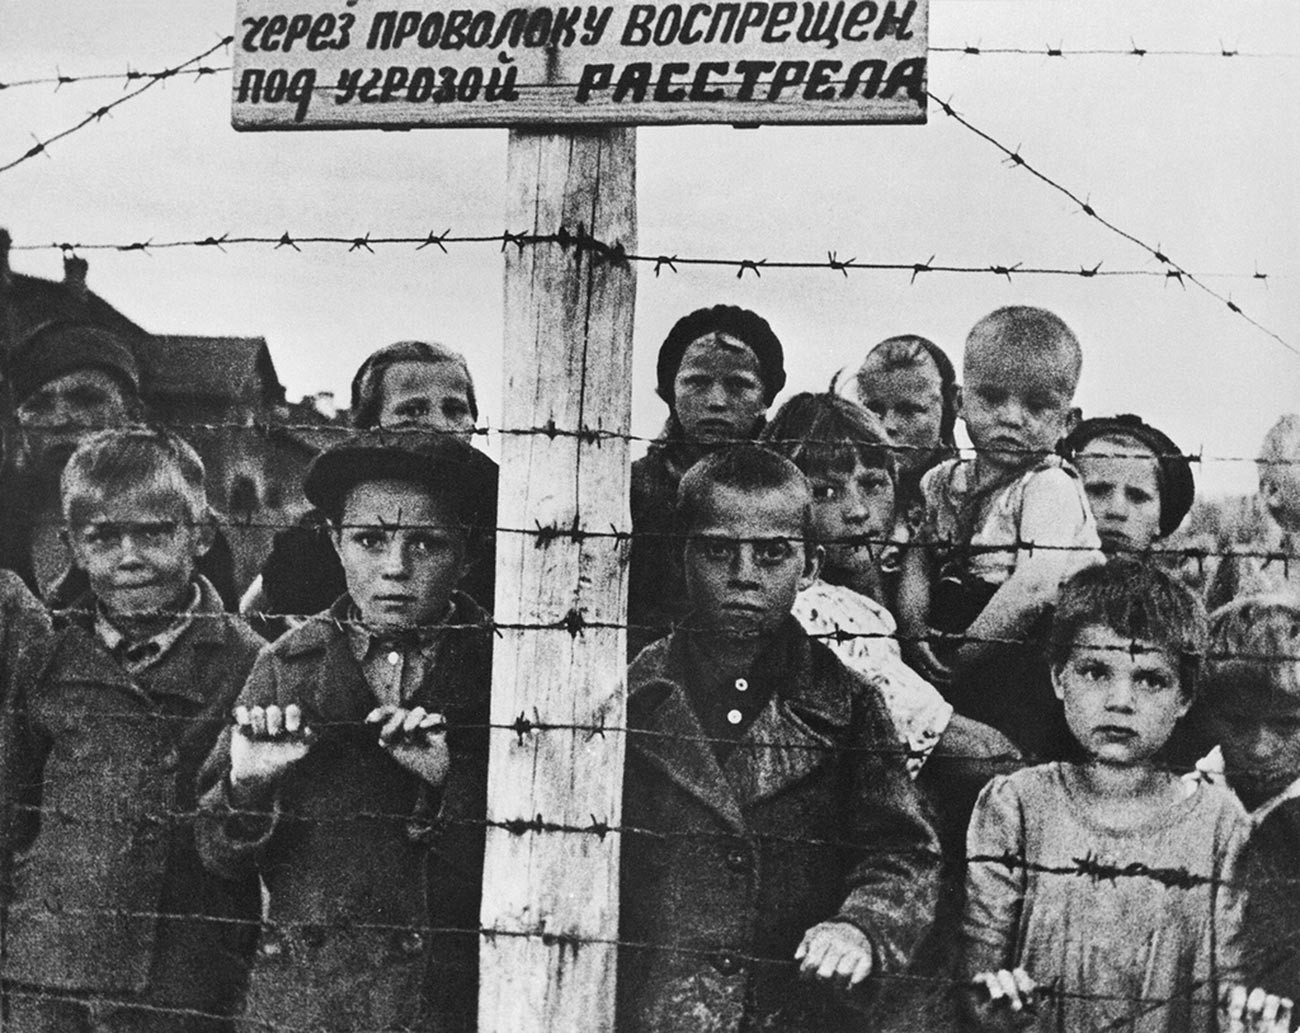 Djeca u nacističkom logoru

